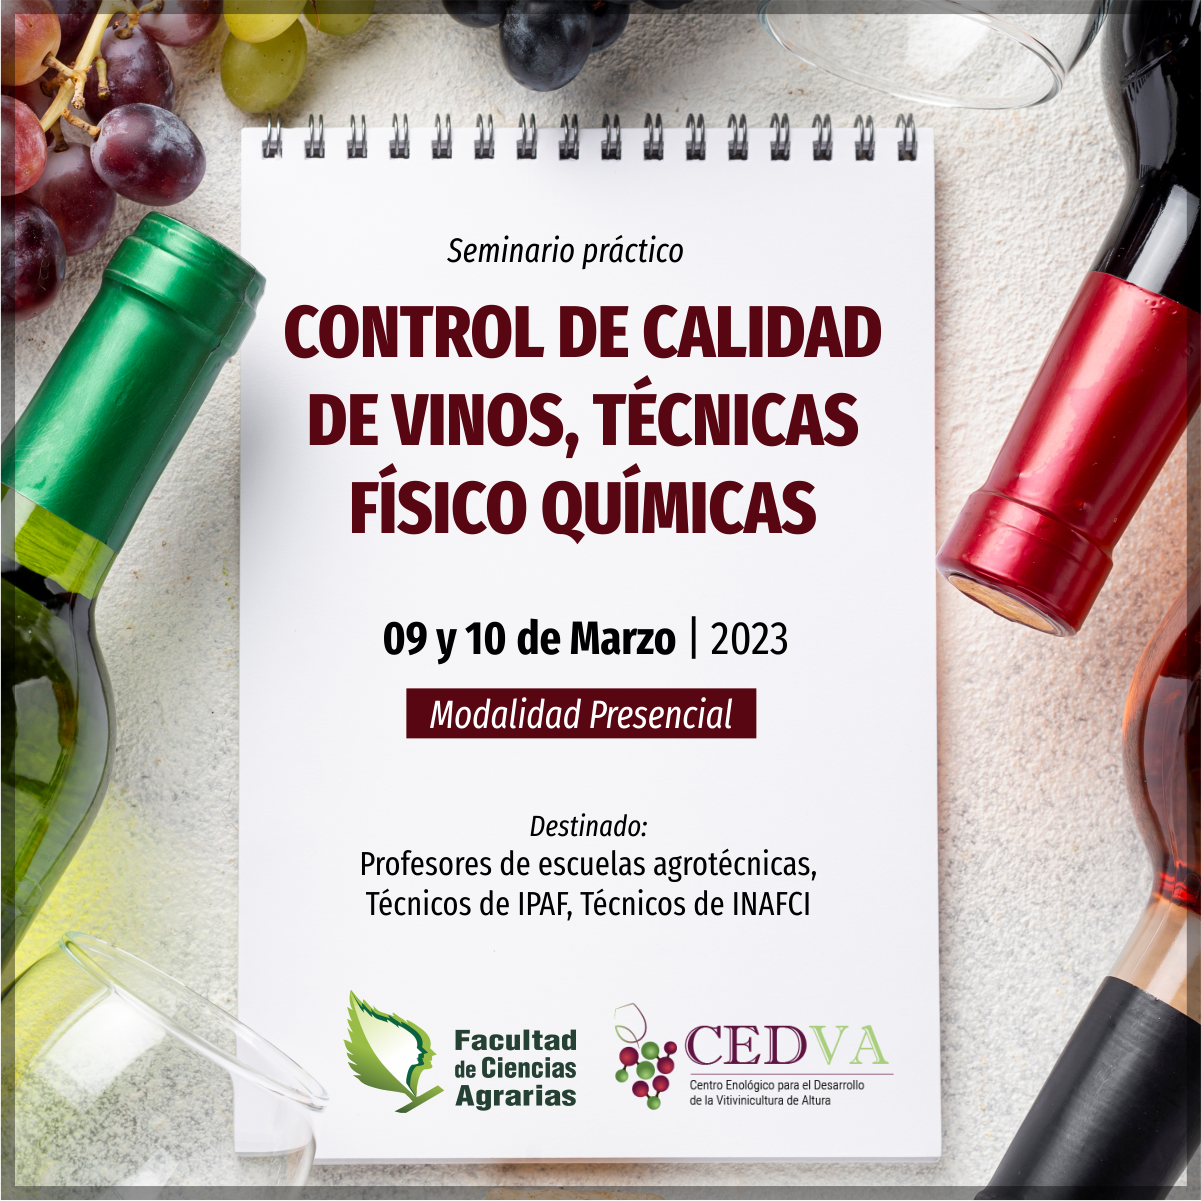 Realizarán seminario sobre control de calidad de vinos y técnicas físico químicas